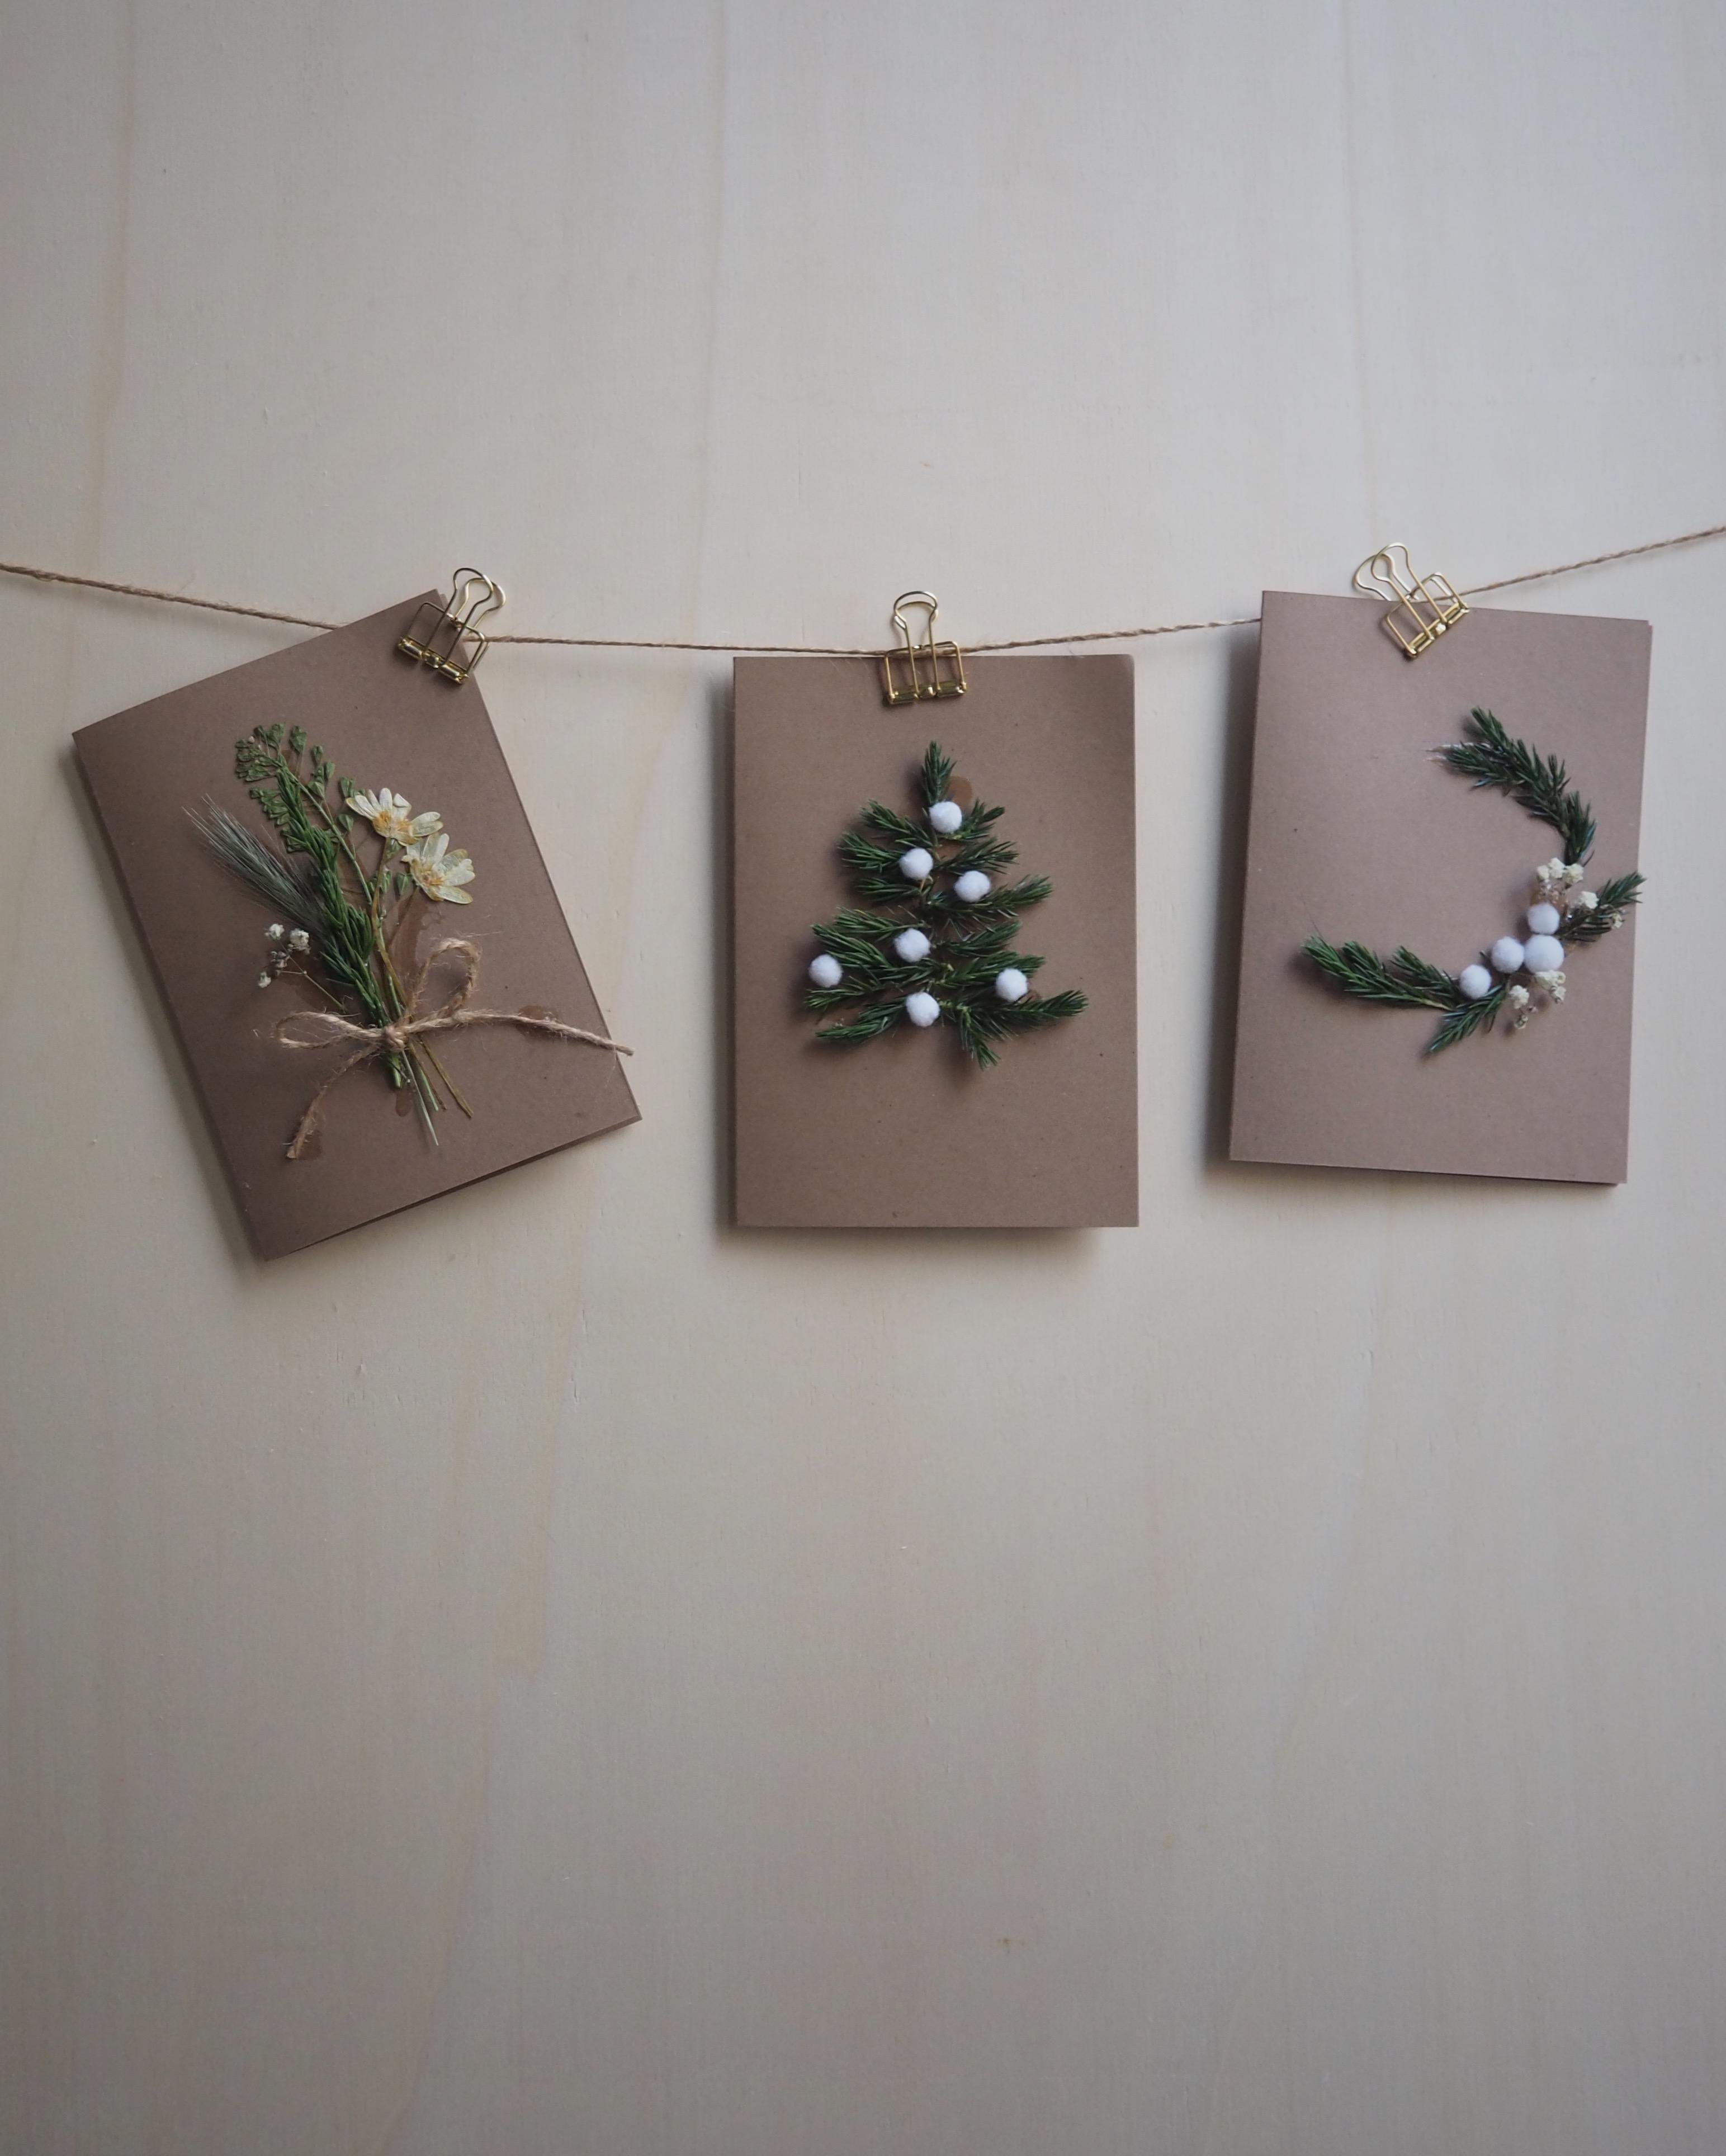 Zeit für Weihnachtspost! Selbstgebastelte Karten mit Zweigen und Trockenblumen. #diy #weihnachtspost #bastelideen 